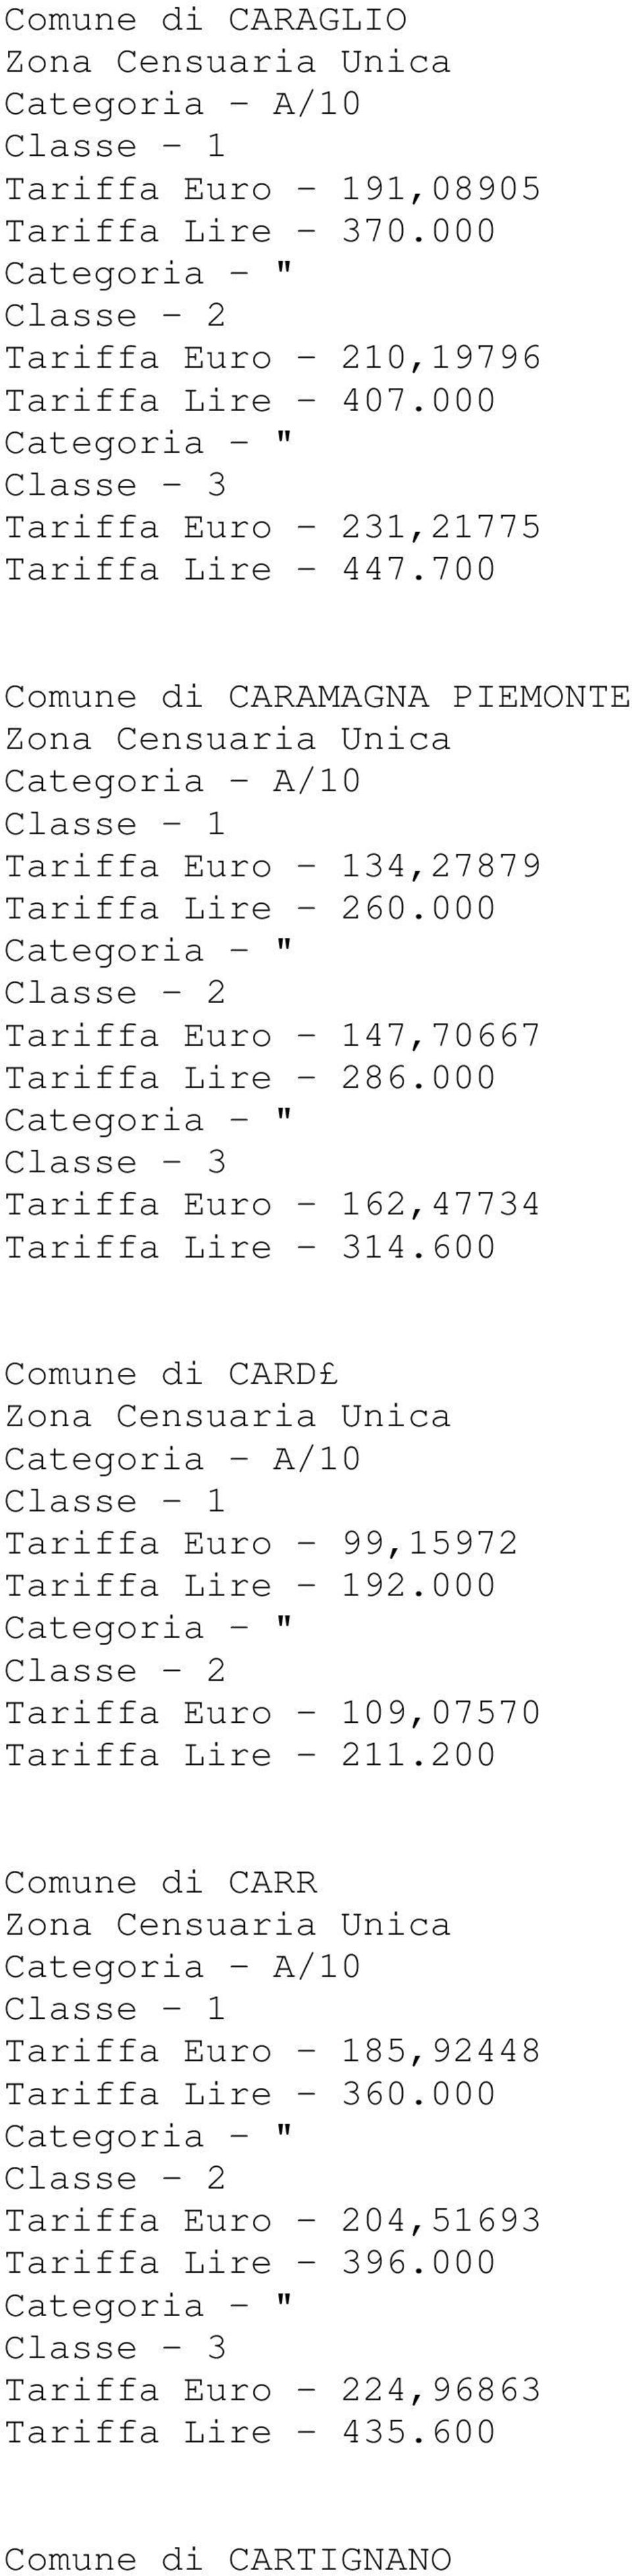 000 Tariffa Euro - 147,70667 Tariffa Lire - 286.000 Tariffa Euro - 162,47734 Tariffa Lire - 314.